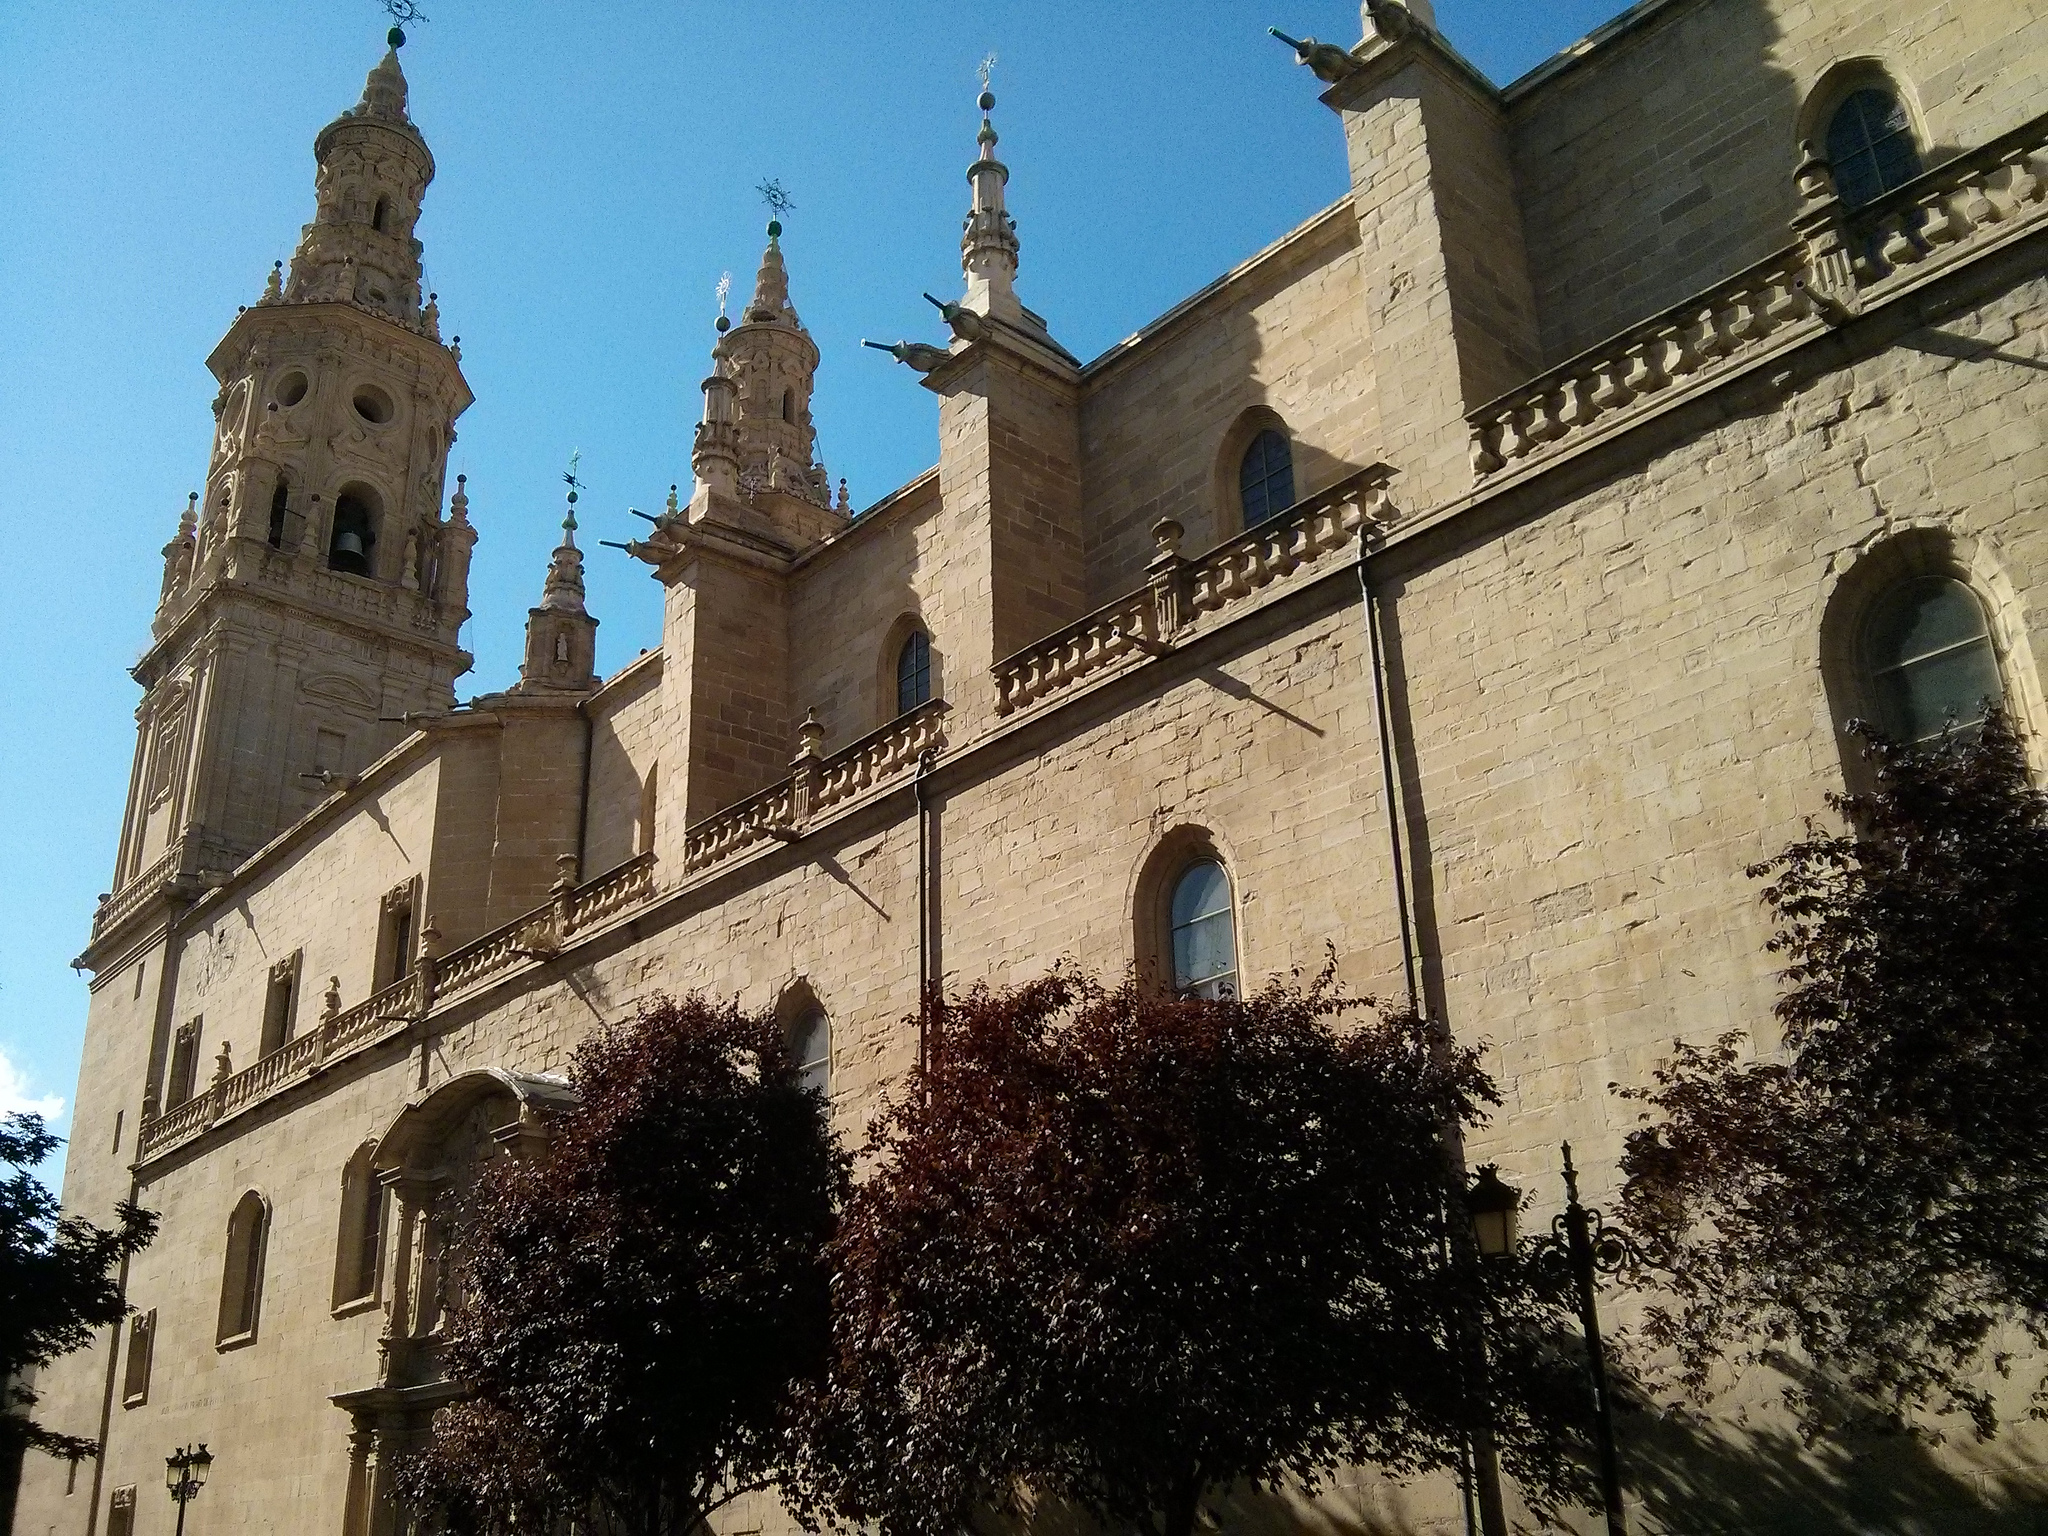 Fachada sur de la Concatedral de Santa María la Redonda